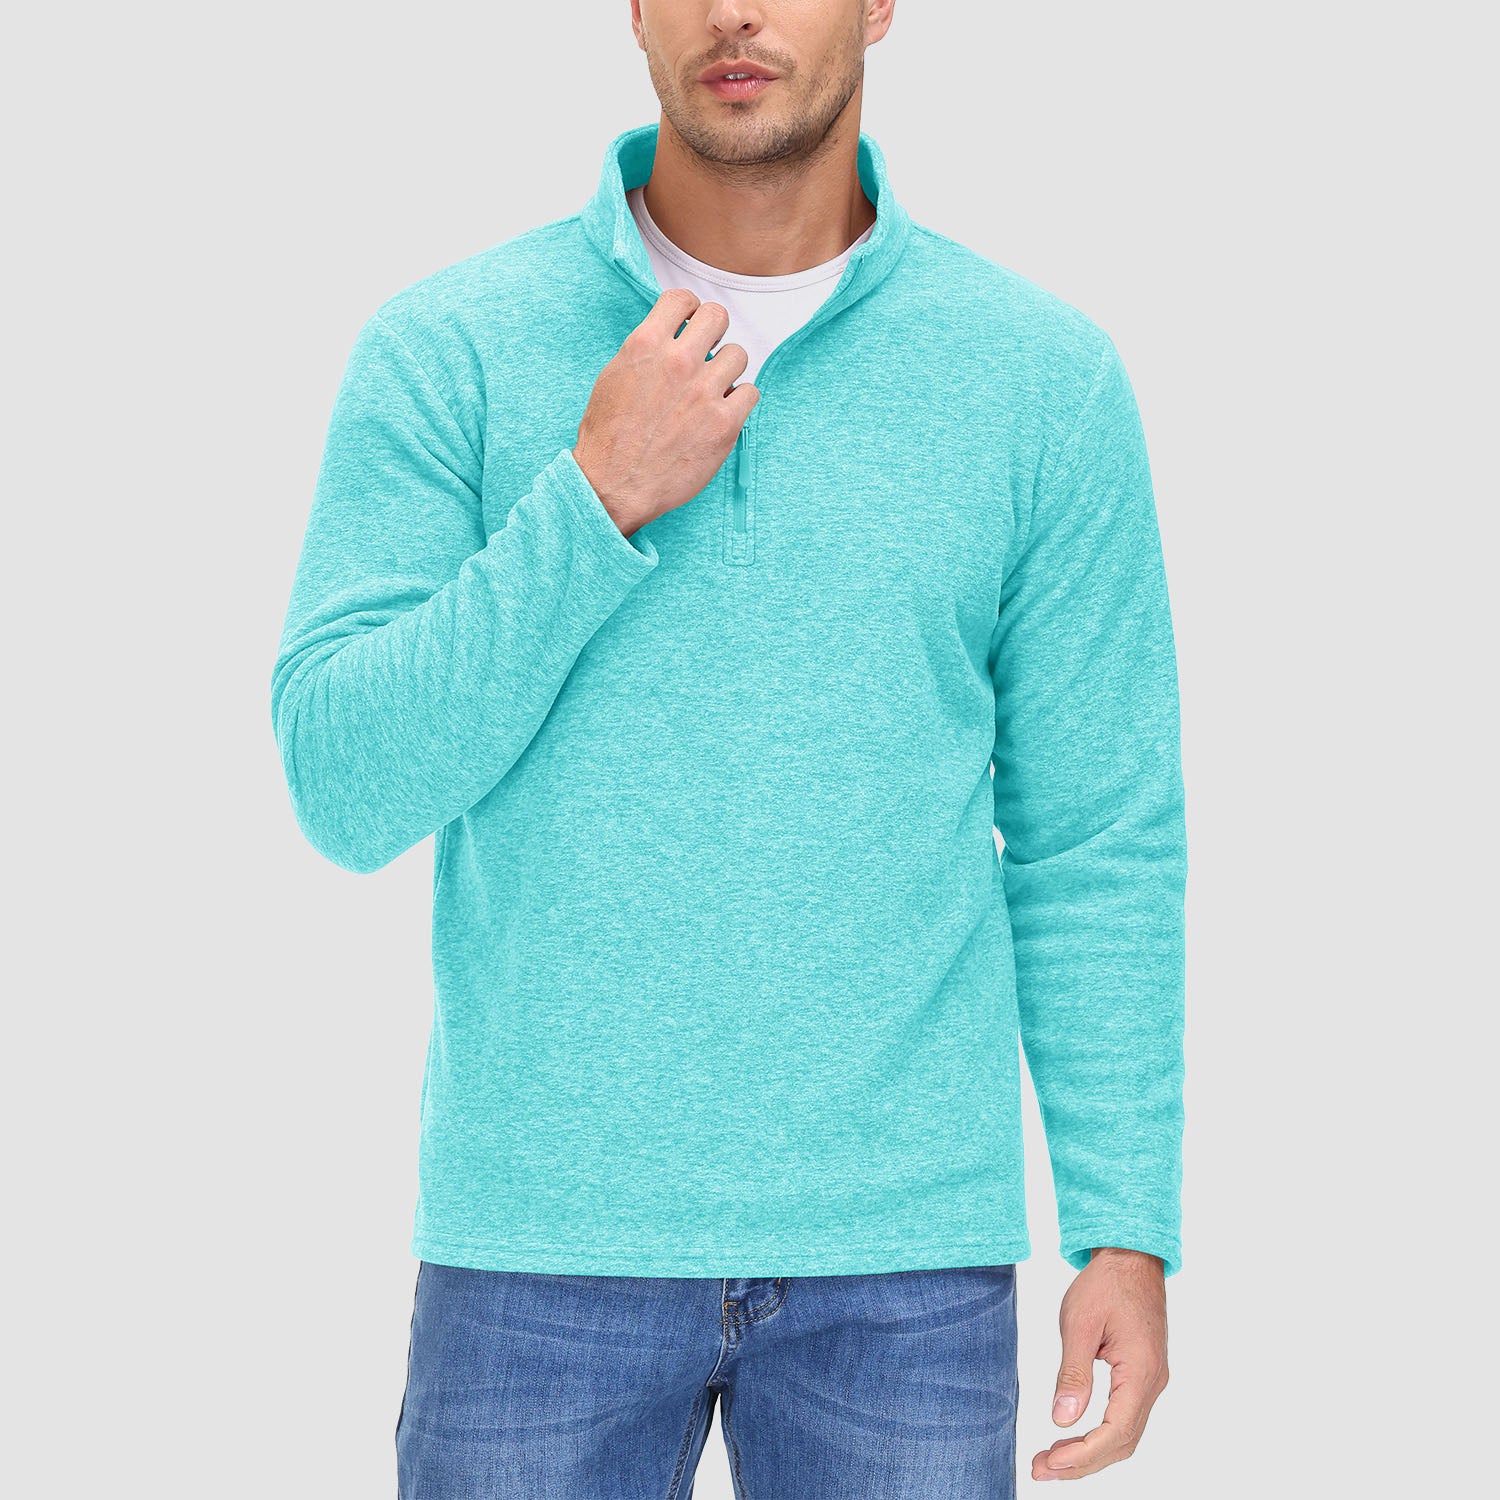 Men's 1/4 Zip Pullover Shirt Long Sleeve Sweatshirts